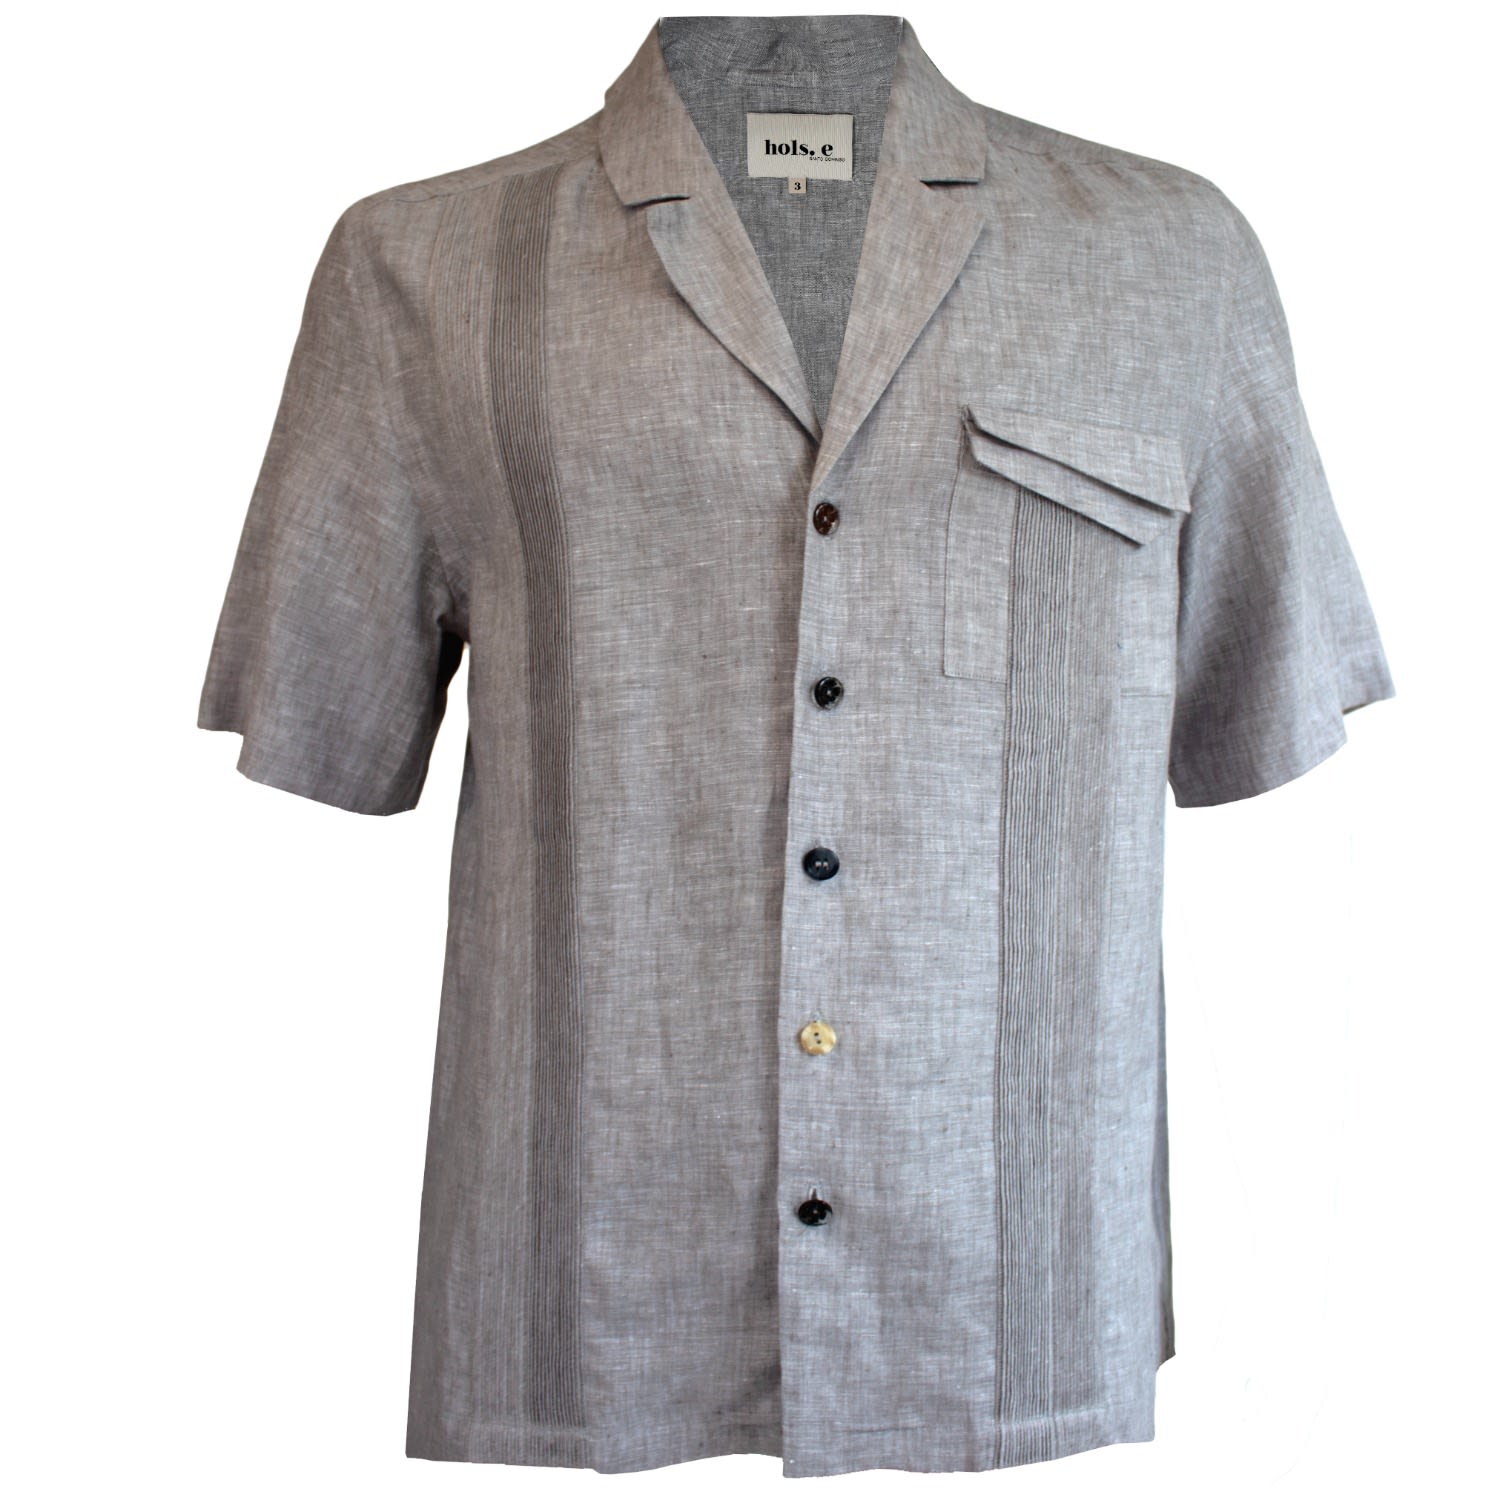 Men's Grey Speckled Short Sleeve Shirt Medium hols. e